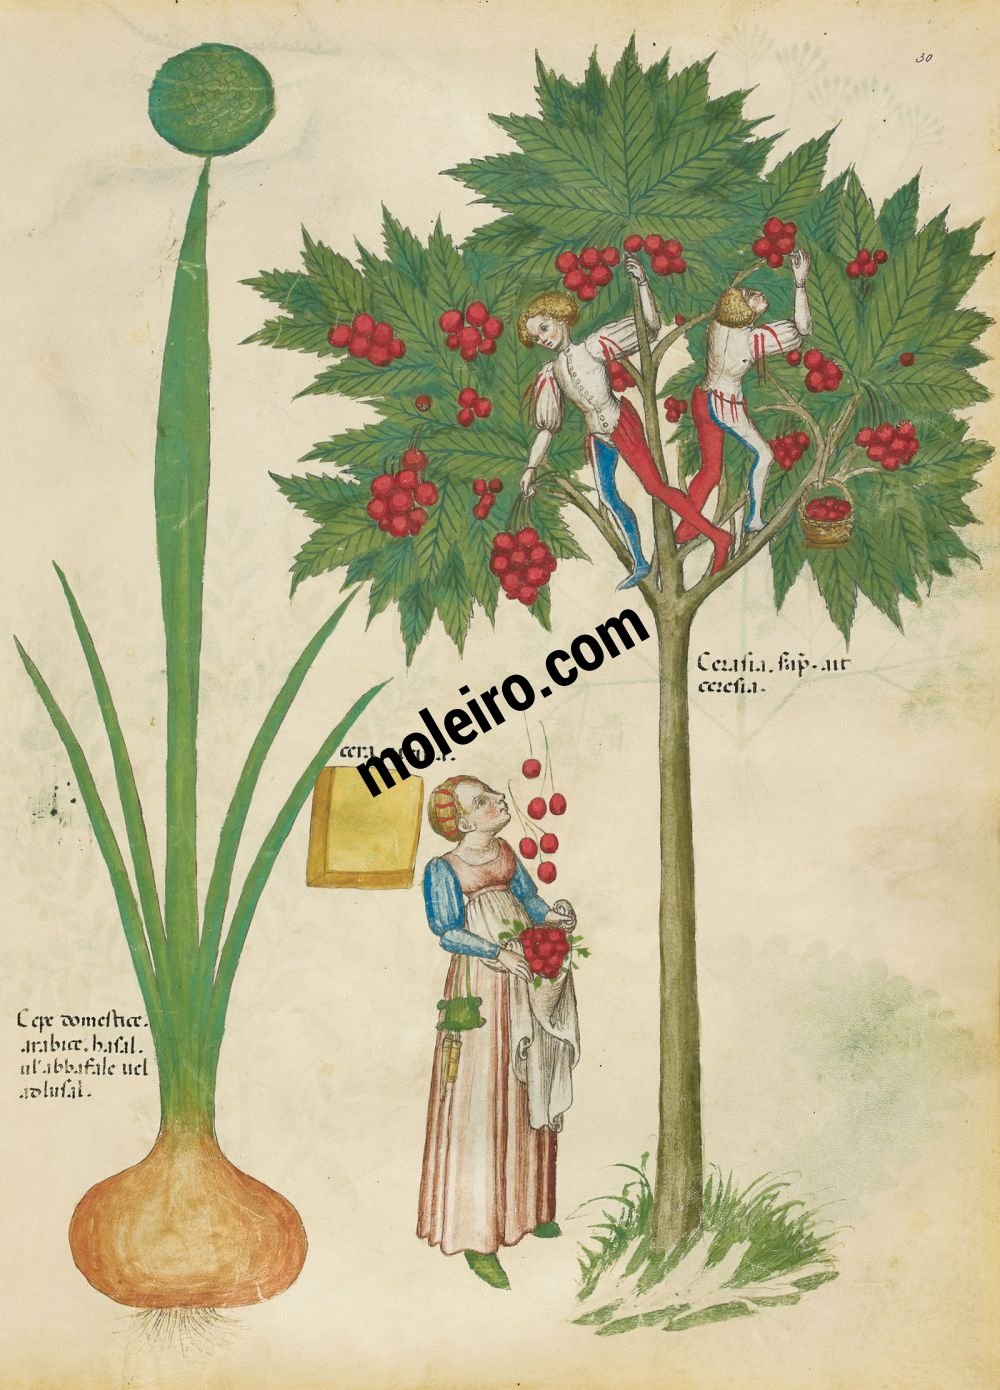 Tratado de plantas medicinales. Tractatus de Herbis - Sloane 4016 f. 30r: Cebolla cultivada; cera amarilla; cerezas